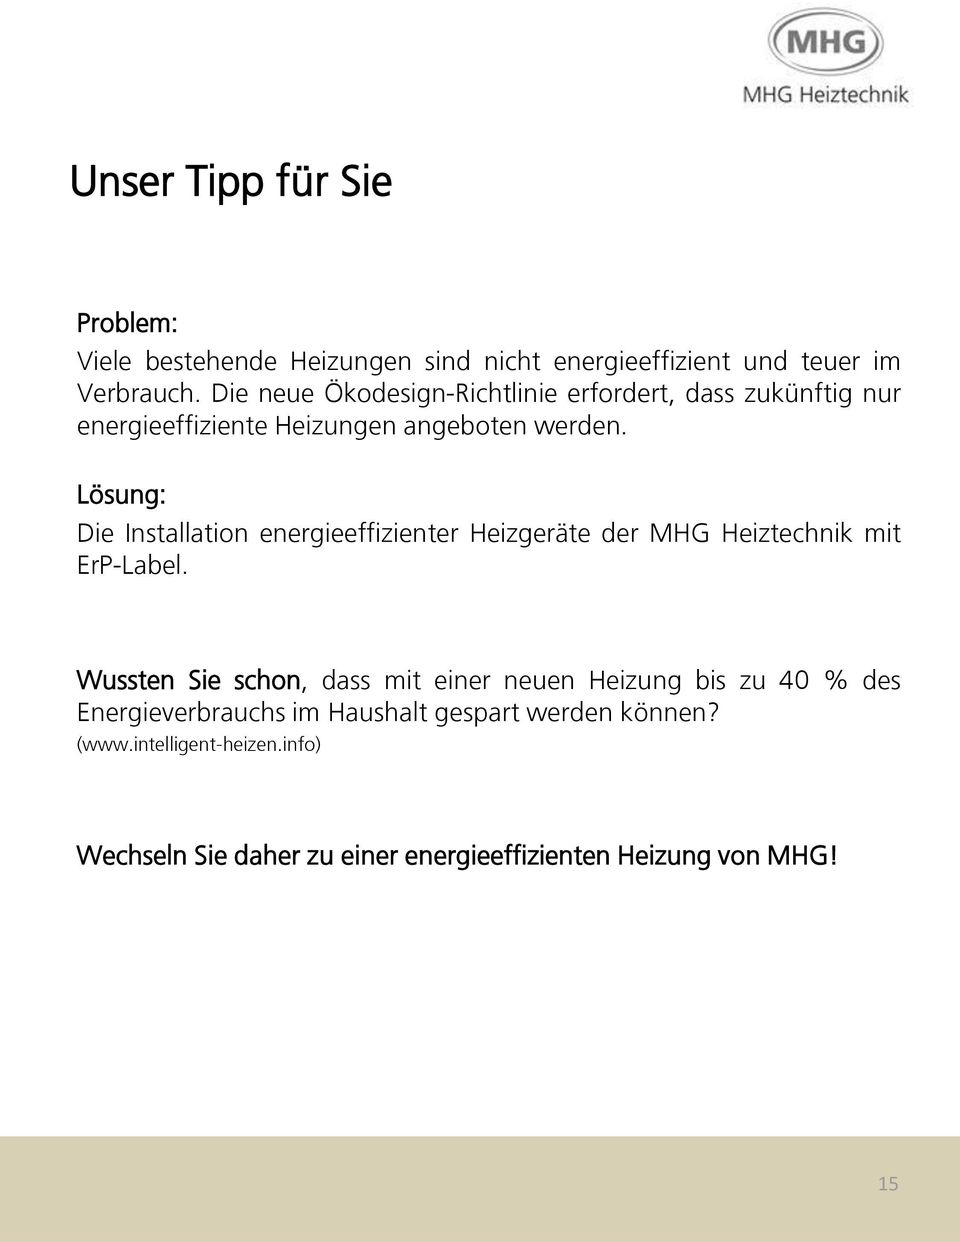 Lösung: Die Installation energieeffizienter Heizgeräte der MHG Heiztechnik mit ErP-Label.